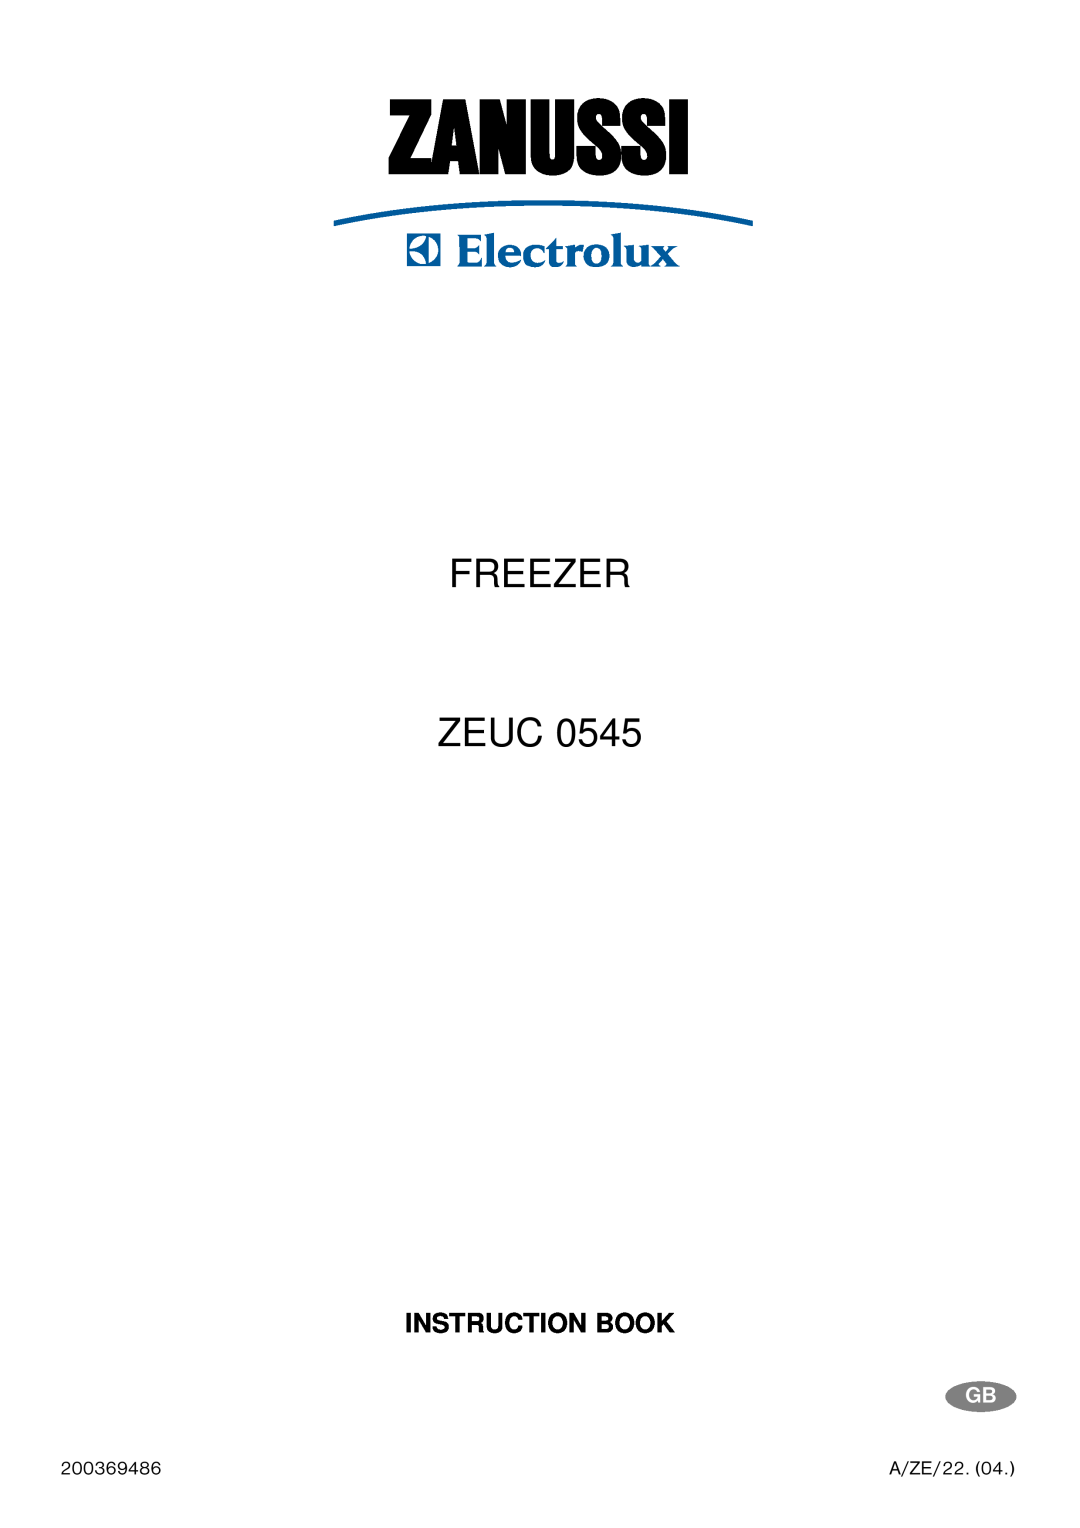 Zanussi ZEUC 0545 manual Zanussi, Freezer Zeuc, Instruction Book 